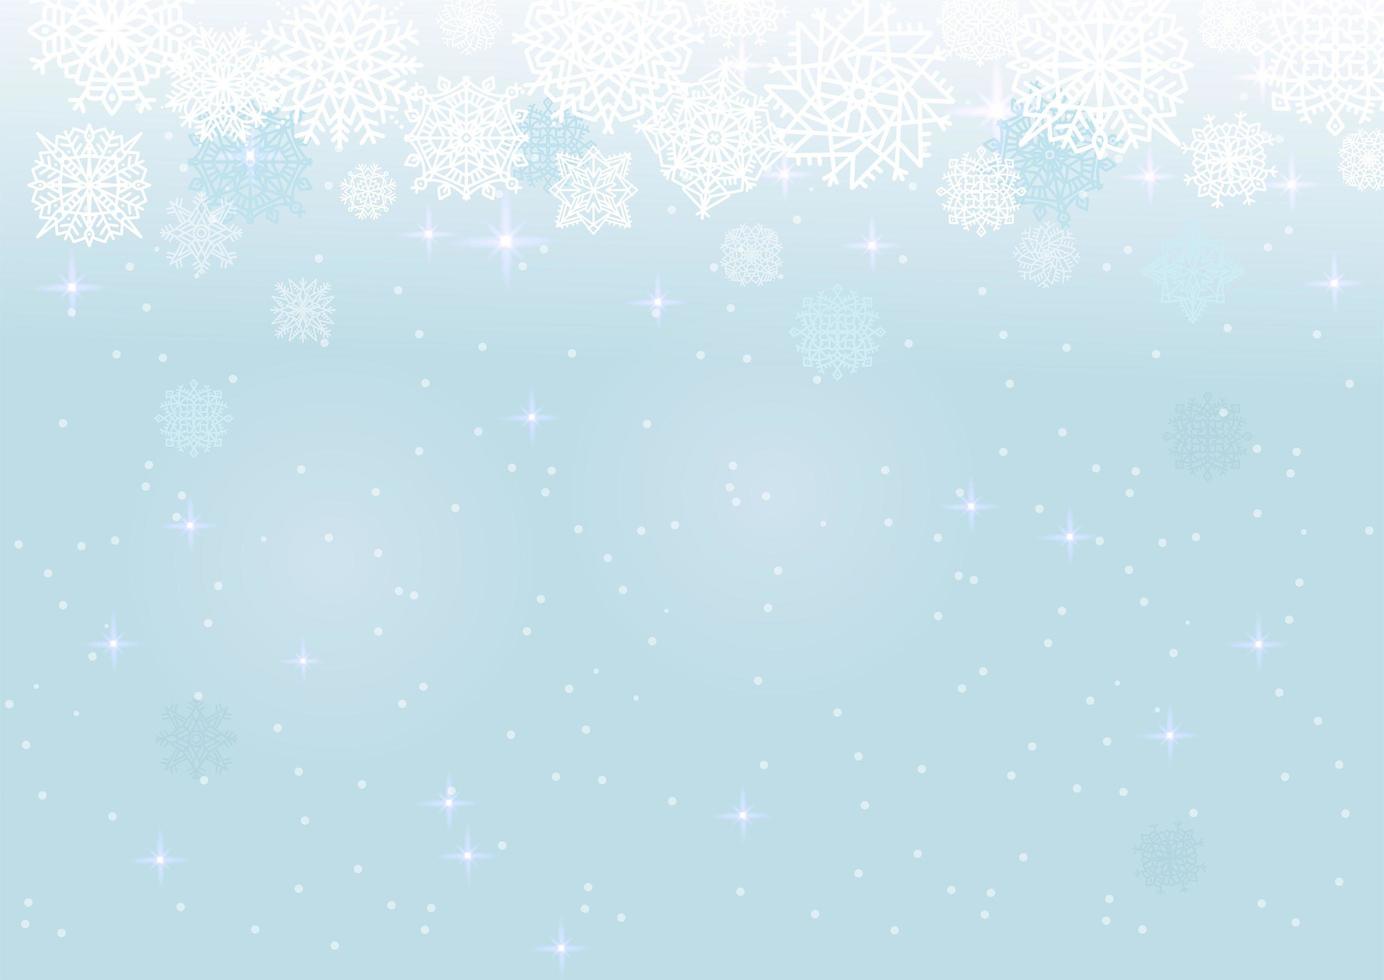 weißer schnee auf dem blauen maschenhintergrund, winter- und weihnachtsthema. abstrakte Vektorkarte mit Schneeflocken. vektor